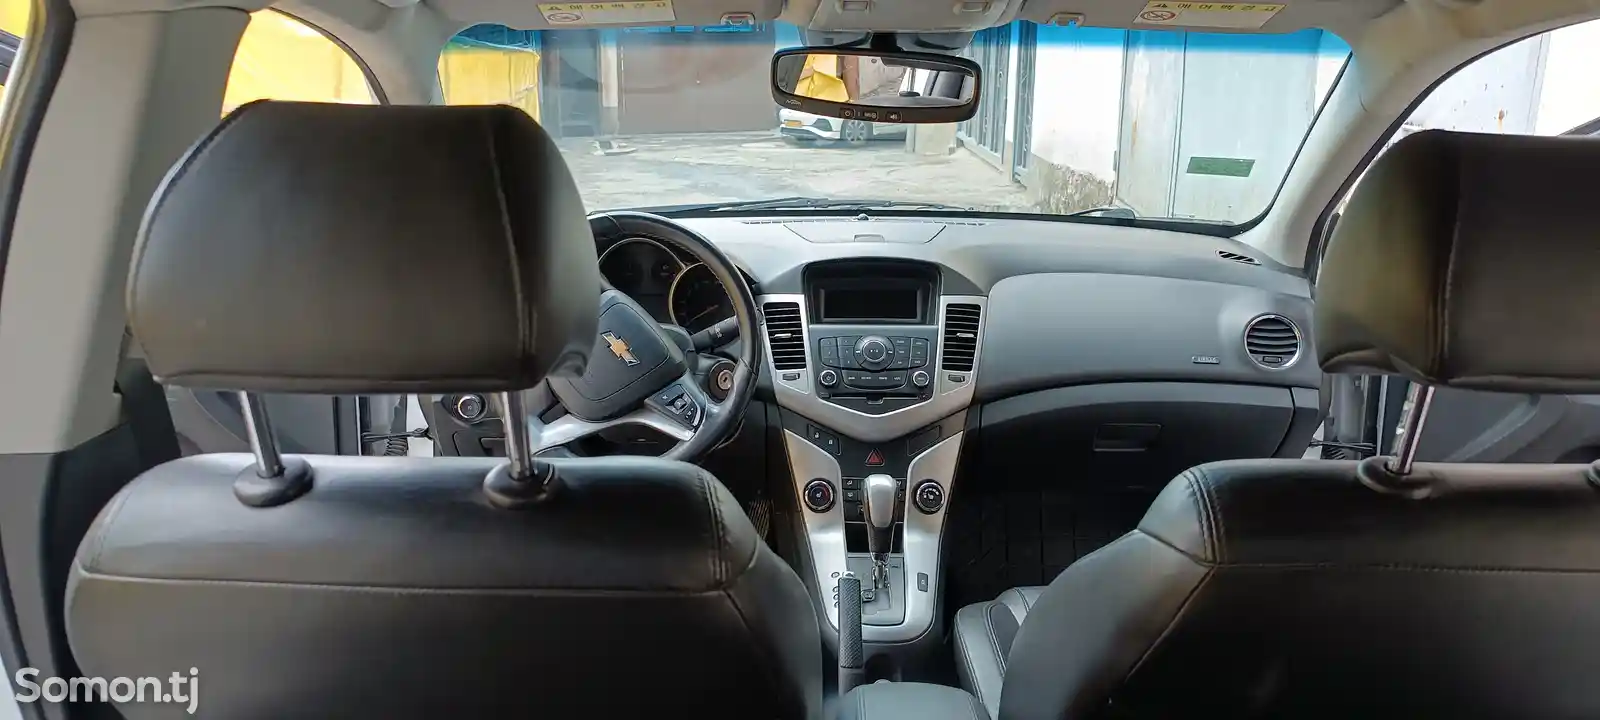 Chevrolet Cruze, 2012-11